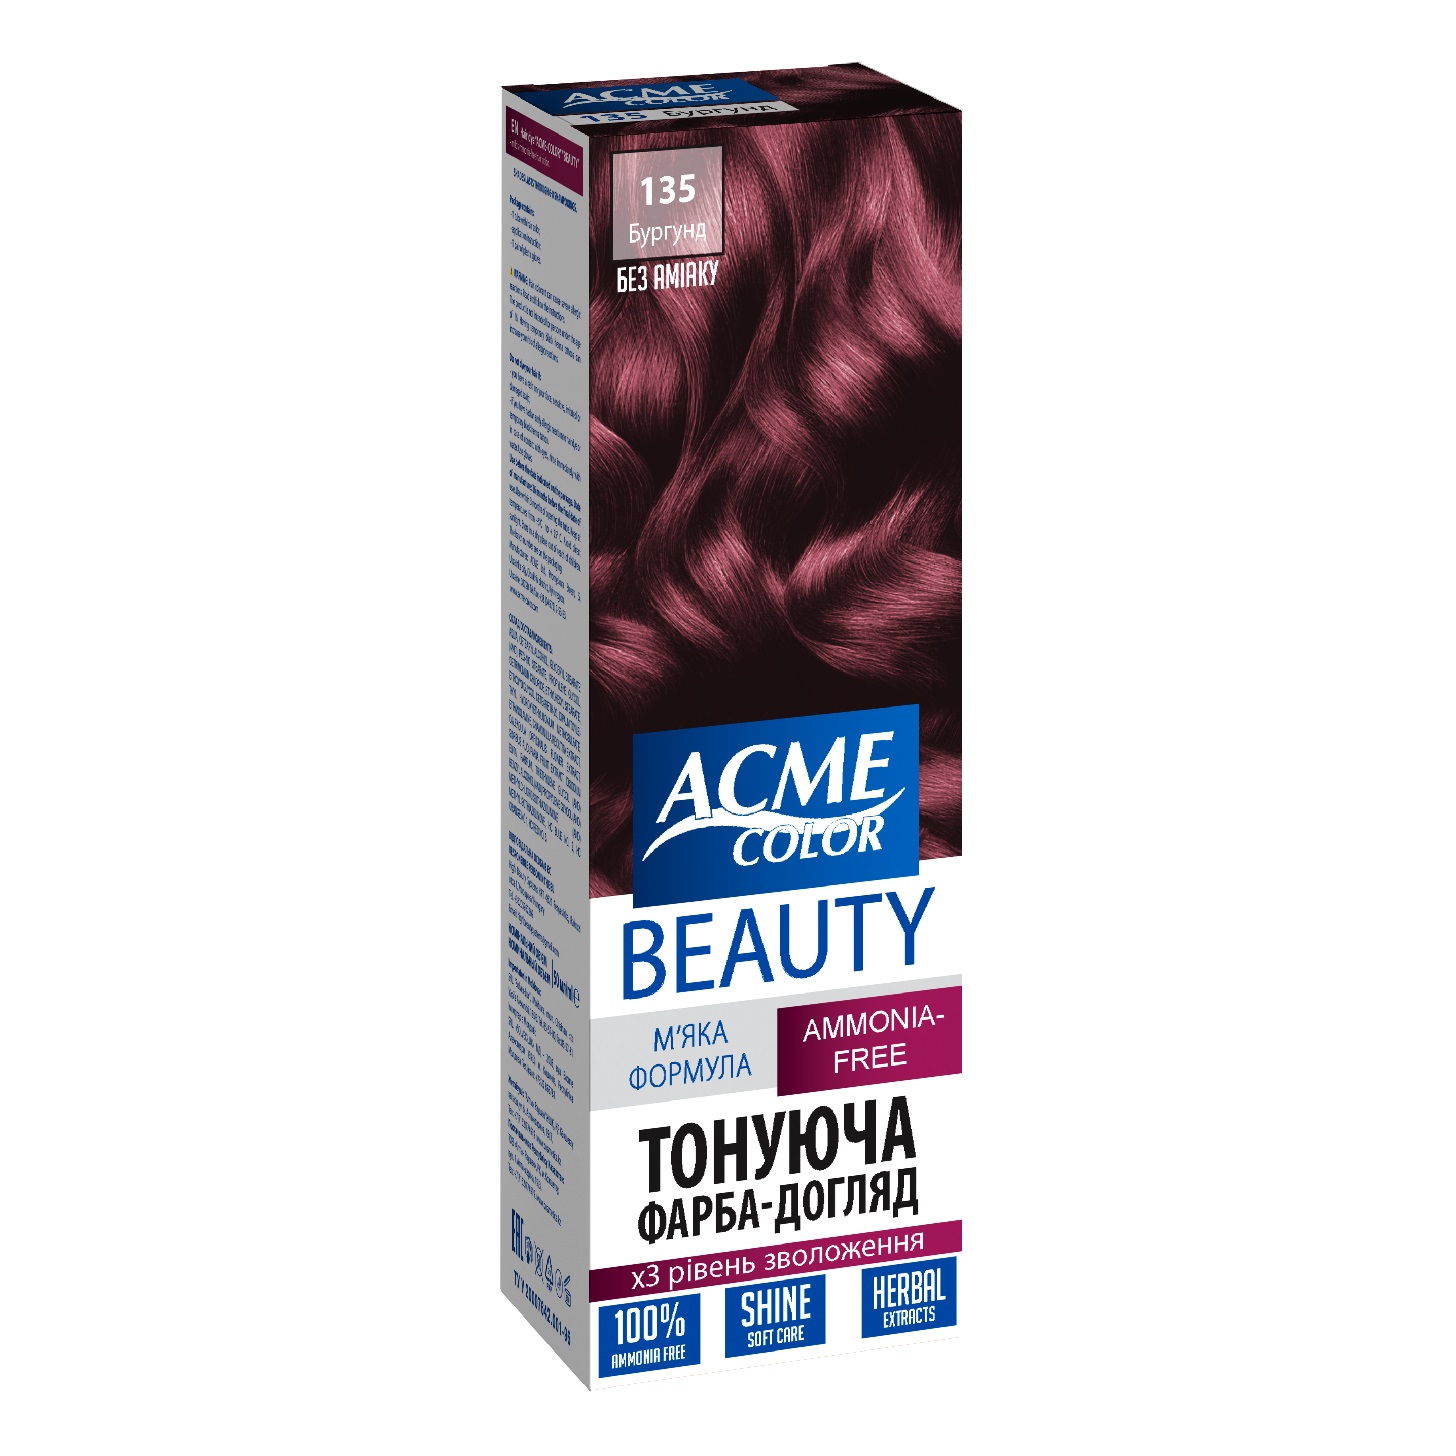 Гель-краска для волос Acme-color Beauty, оттенок 135 (Бургунд), 69 г - фото 1